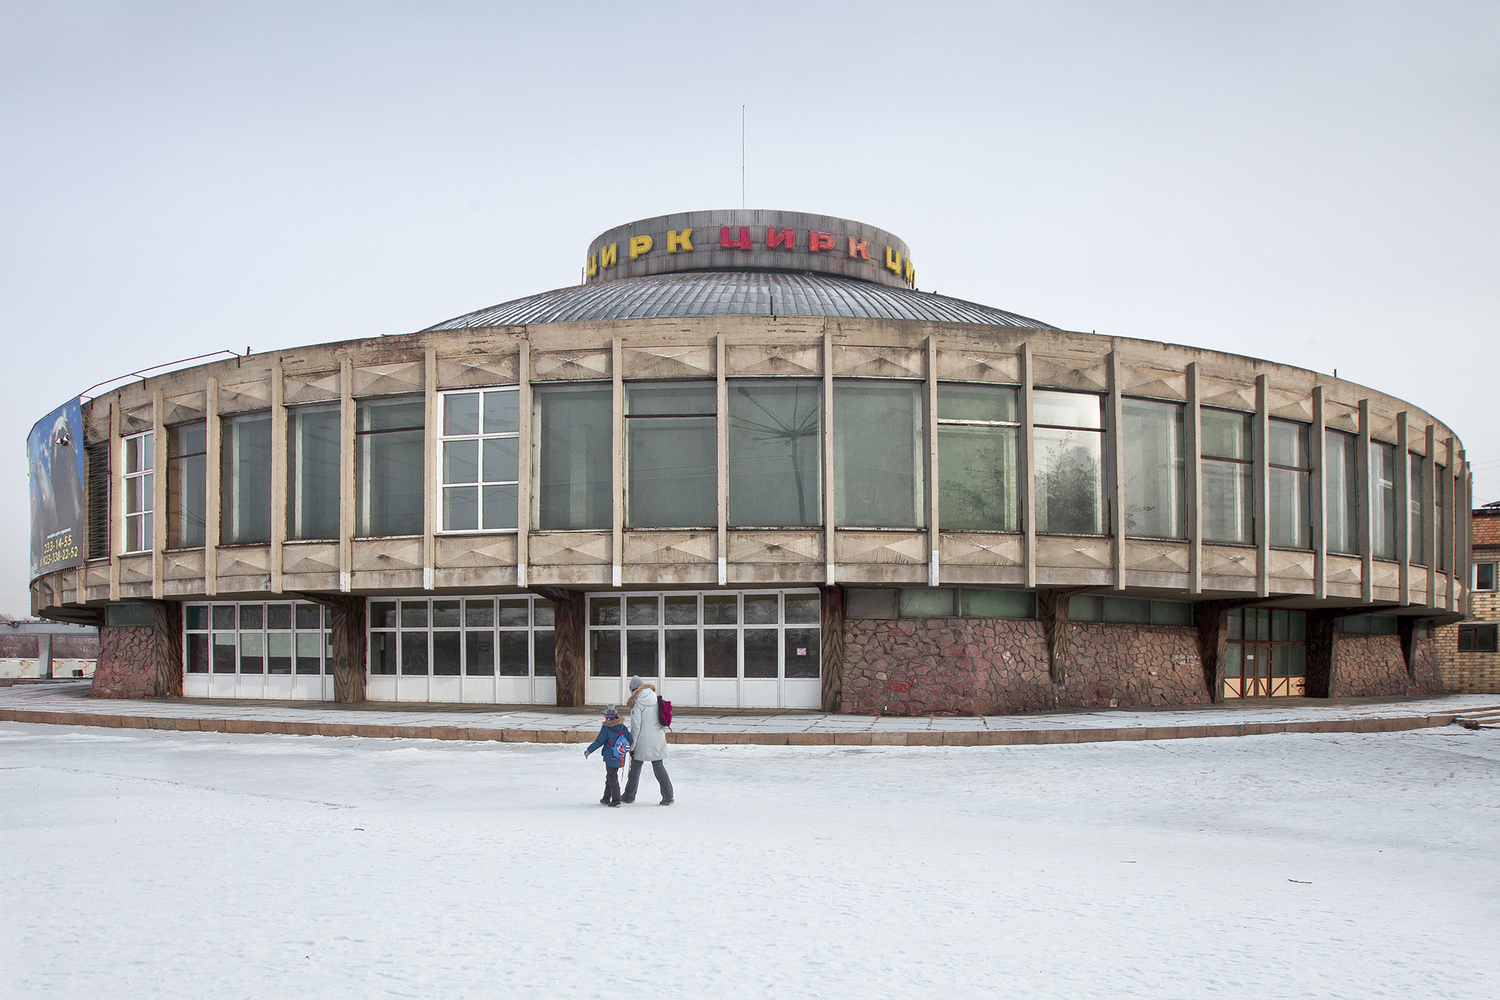 Государственный цирк Красноярска (построен в 1971 г.). Изображение © Zupagrafika